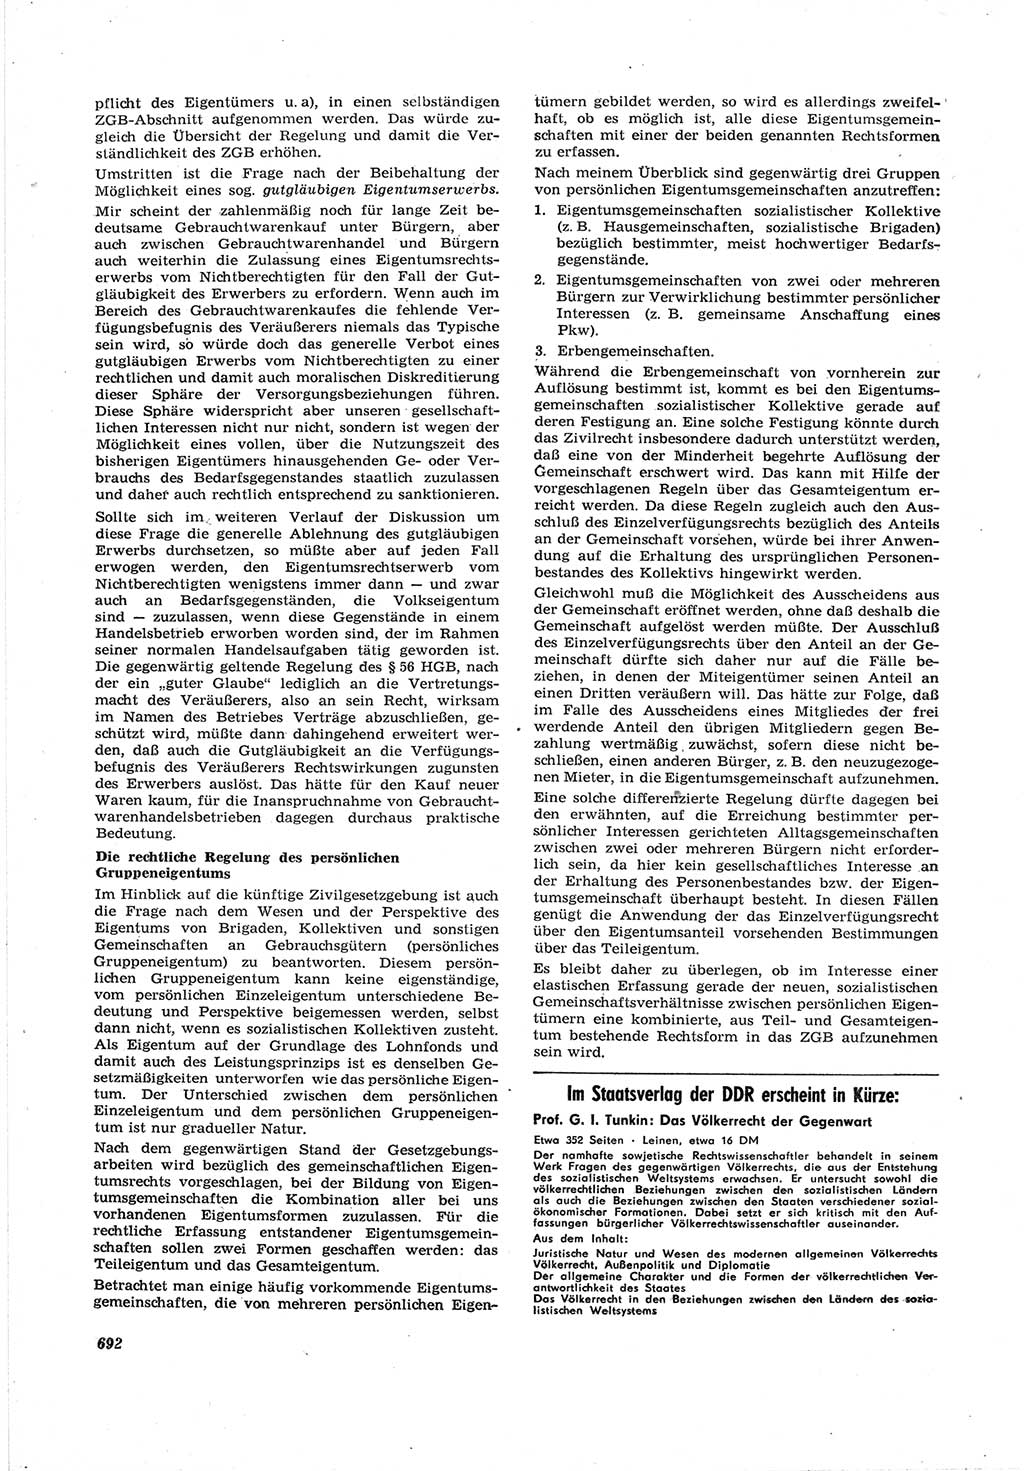 Neue Justiz (NJ), Zeitschrift für Recht und Rechtswissenschaft [Deutsche Demokratische Republik (DDR)], 17. Jahrgang 1963, Seite 692 (NJ DDR 1963, S. 692)